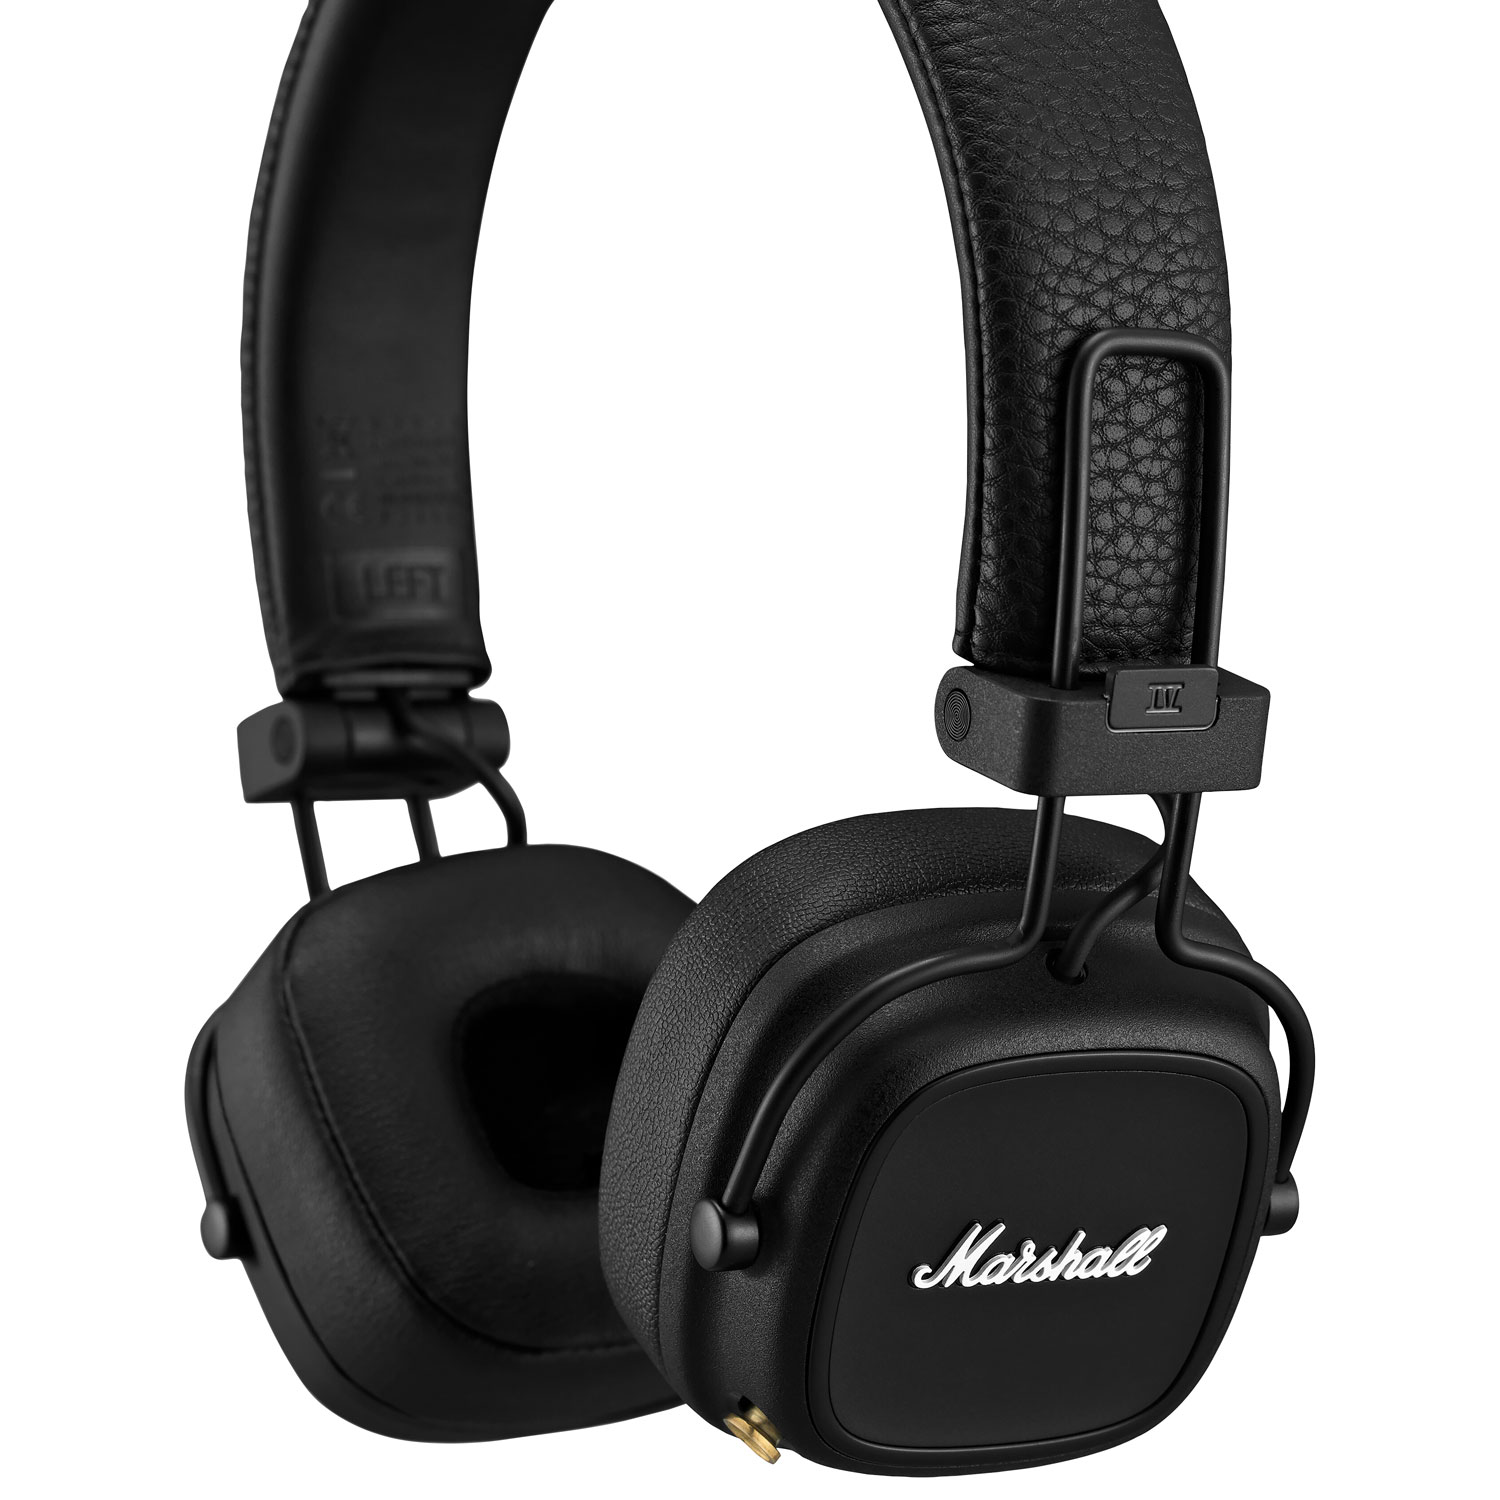 Casque d'écoute Bluetooth Major IV de Marshall - Noir